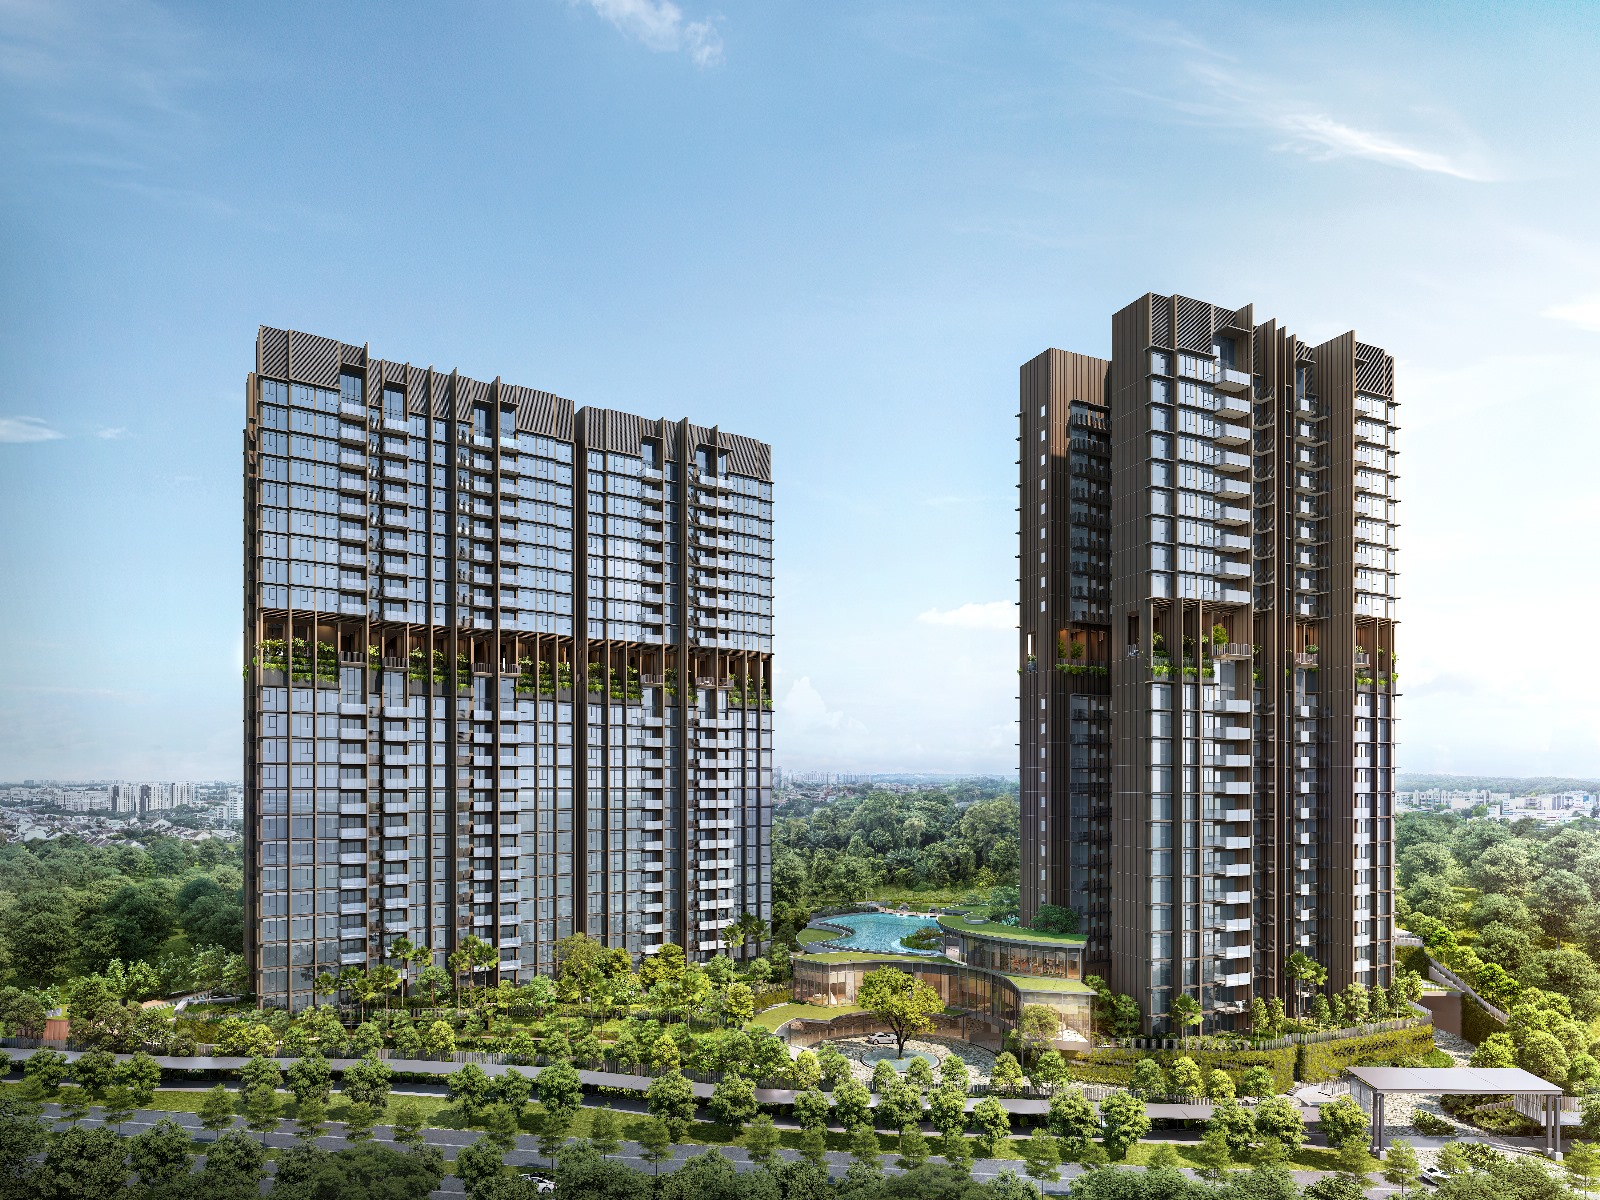 hillock-green-building-view-lentor-central-condo-singapore